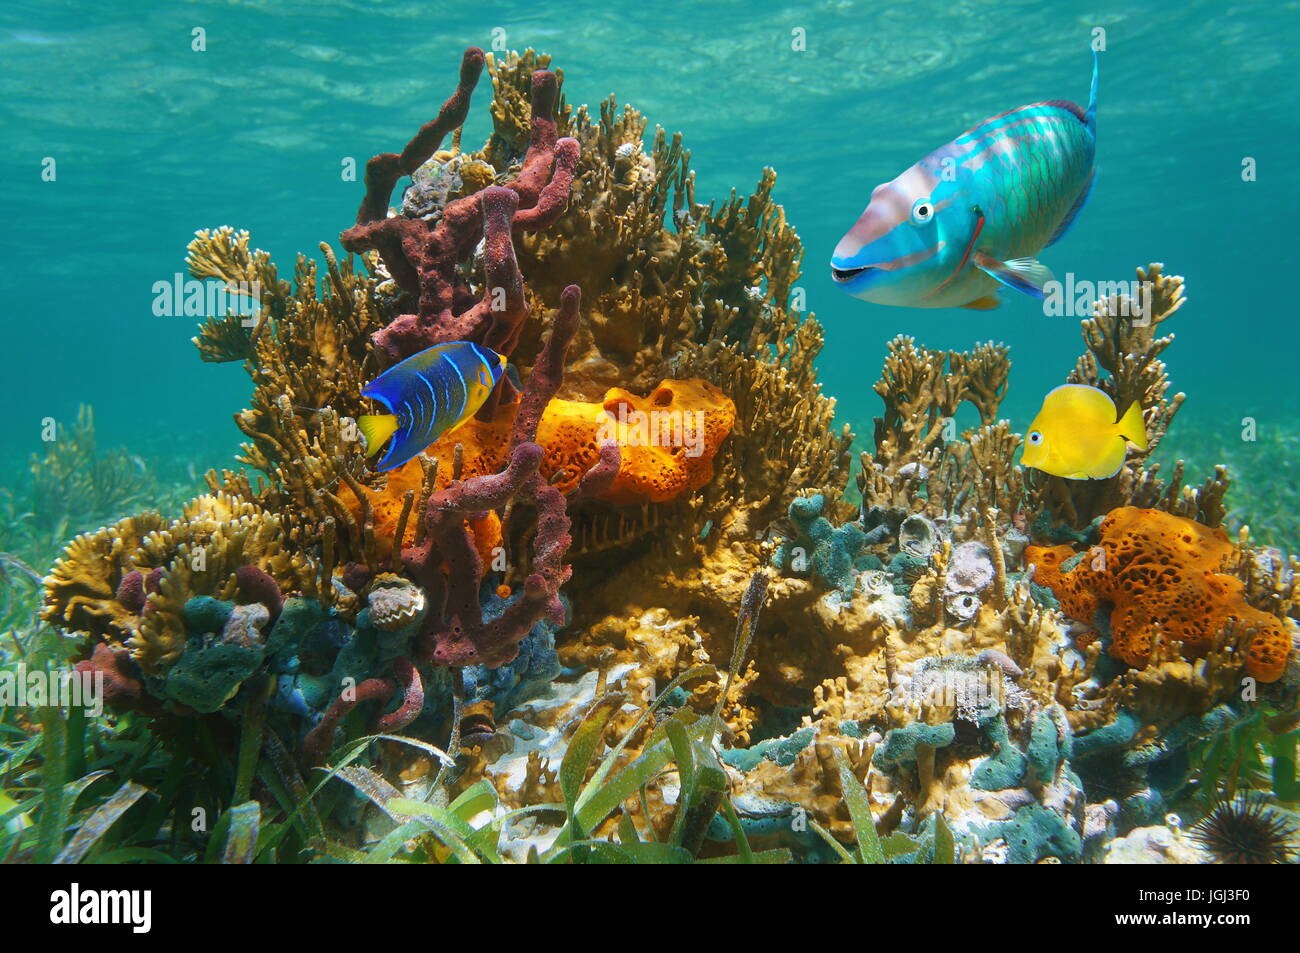 La vie marine tropicale colorée sous l'eau avec poissons, coraux et éponges, océan Atlantique, France Banque D'Images